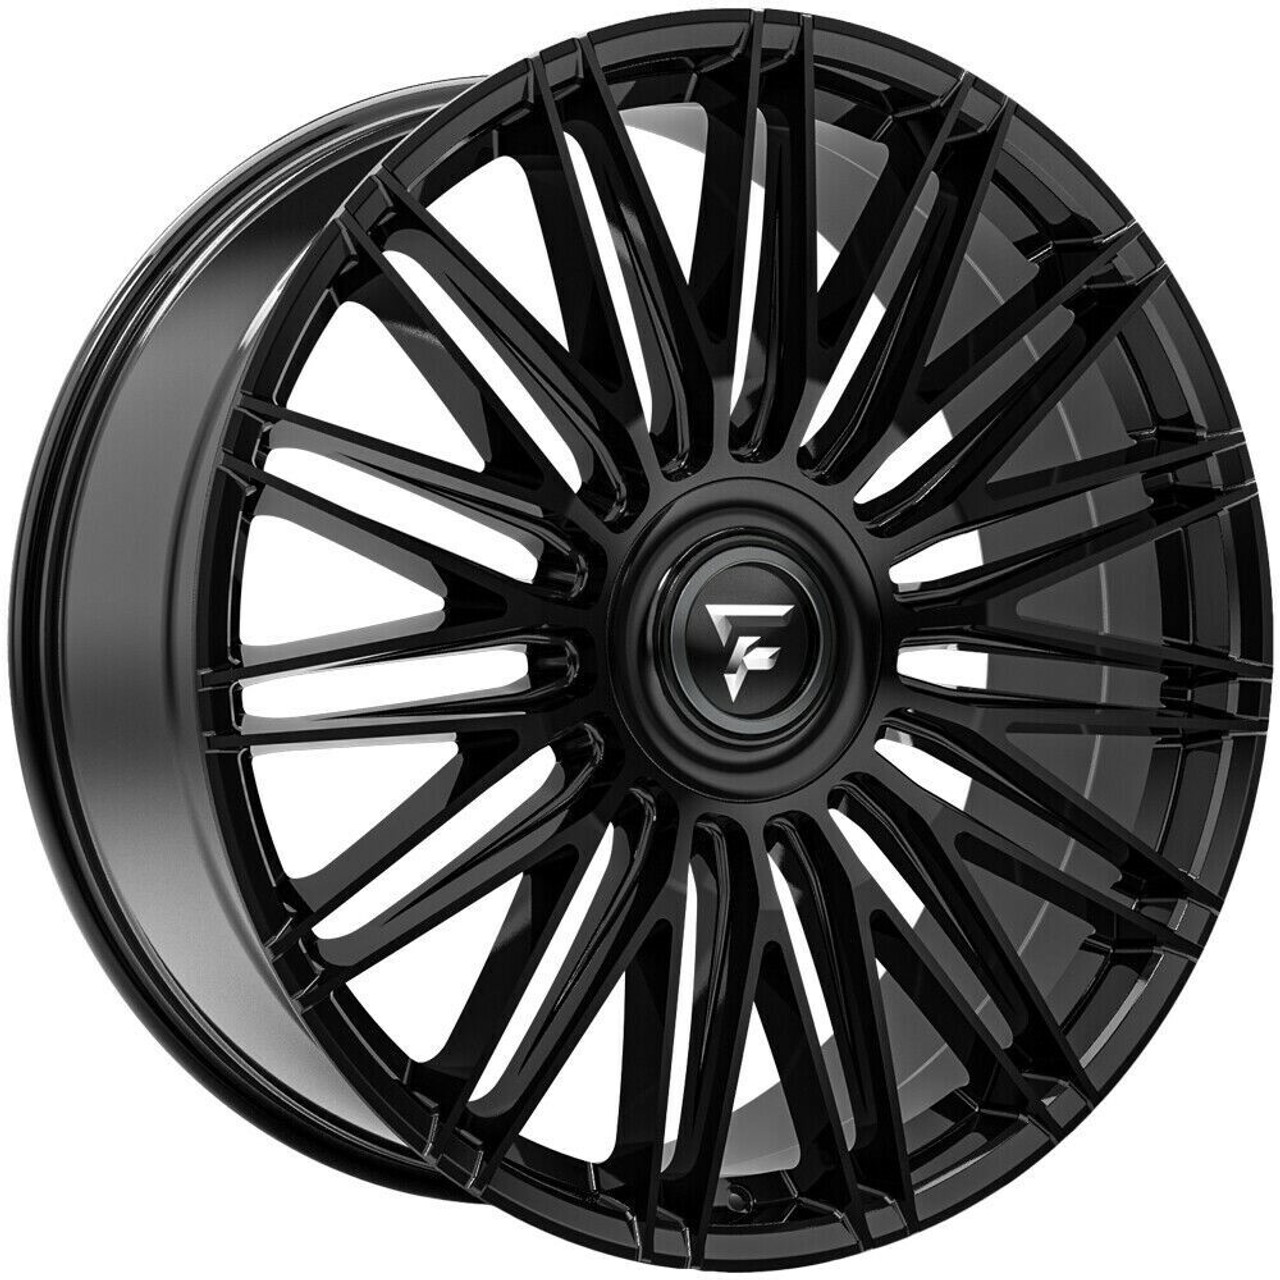 22" Fittipaldi Street FS369B Gloss Black 22x9.5 Wheel 5x108 5x4.5 38mm Rim